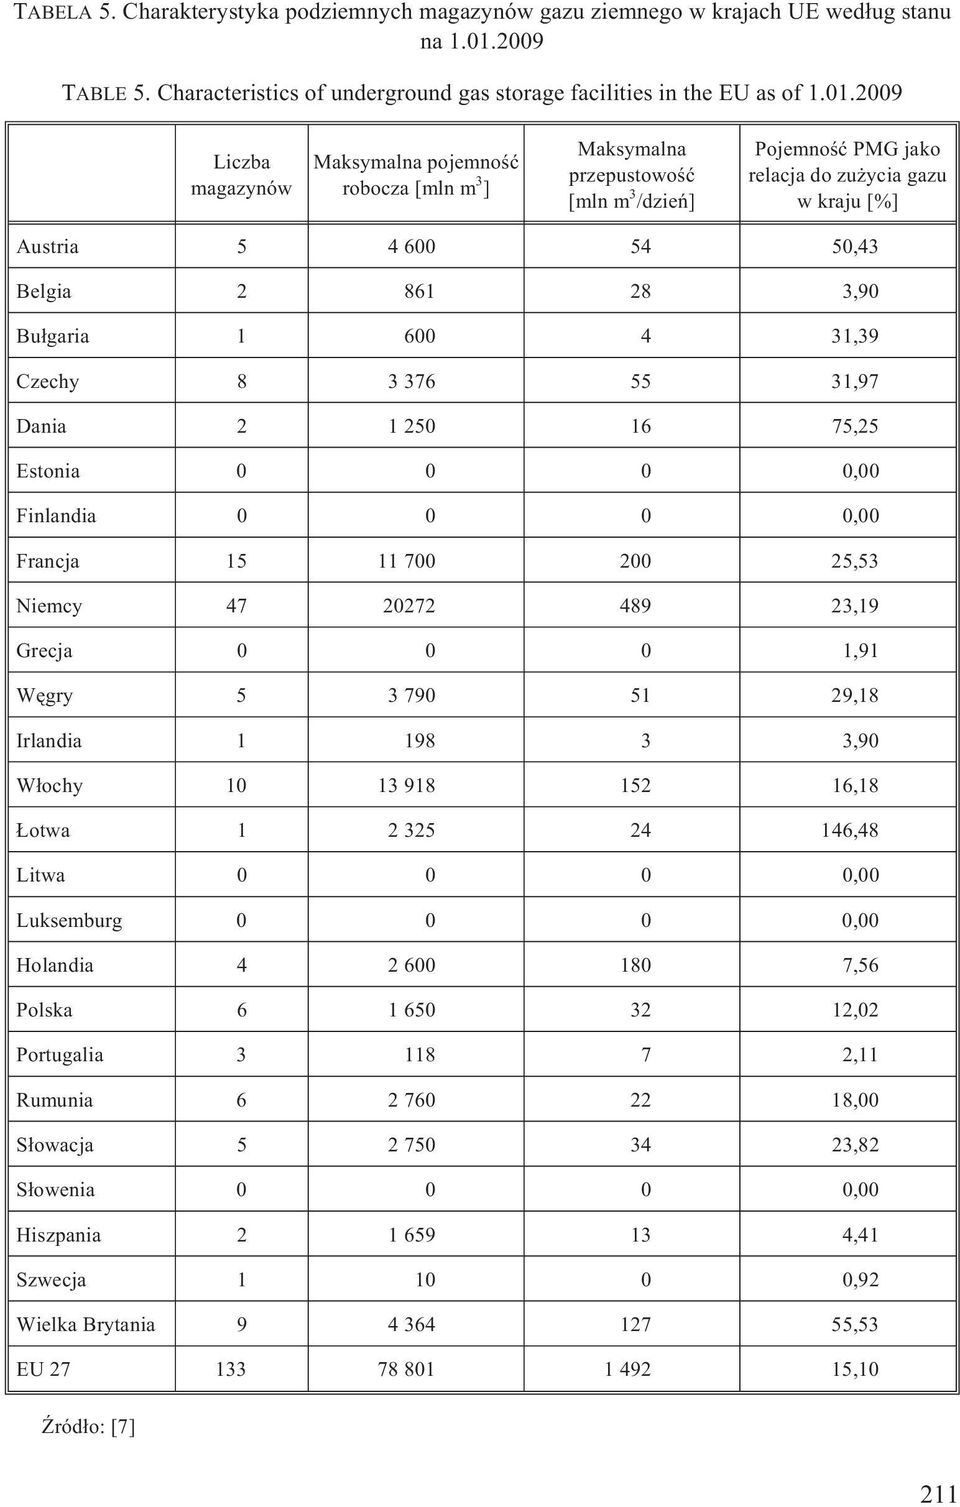 2009 Liczba magazynów Maksymalna pojemnoœæ robocza [mln m 3 ] Maksymalna przepustowoœæ [mln m 3 /dzieñ] Pojemnoœæ PMG jako relacja do zu ycia gazu wkraju[%] Austria 5 4 600 54 50,43 Belgia 2 861 28